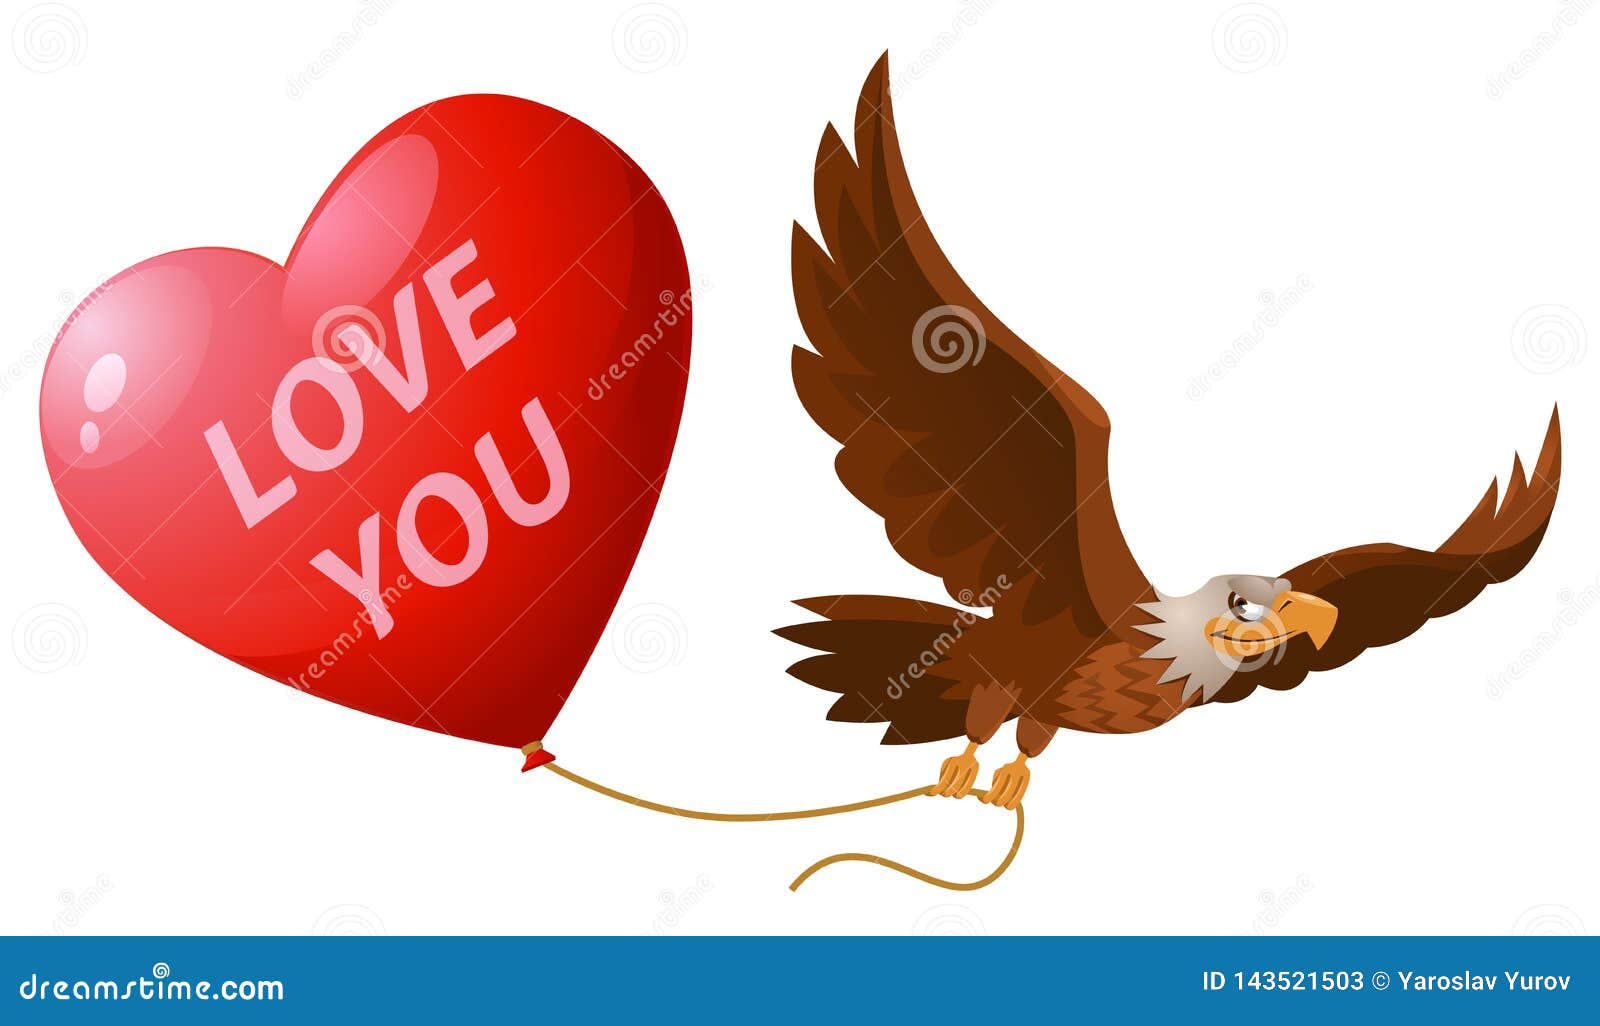 Изображение три орла держат шар. Орел показывает сердечко cartoon.